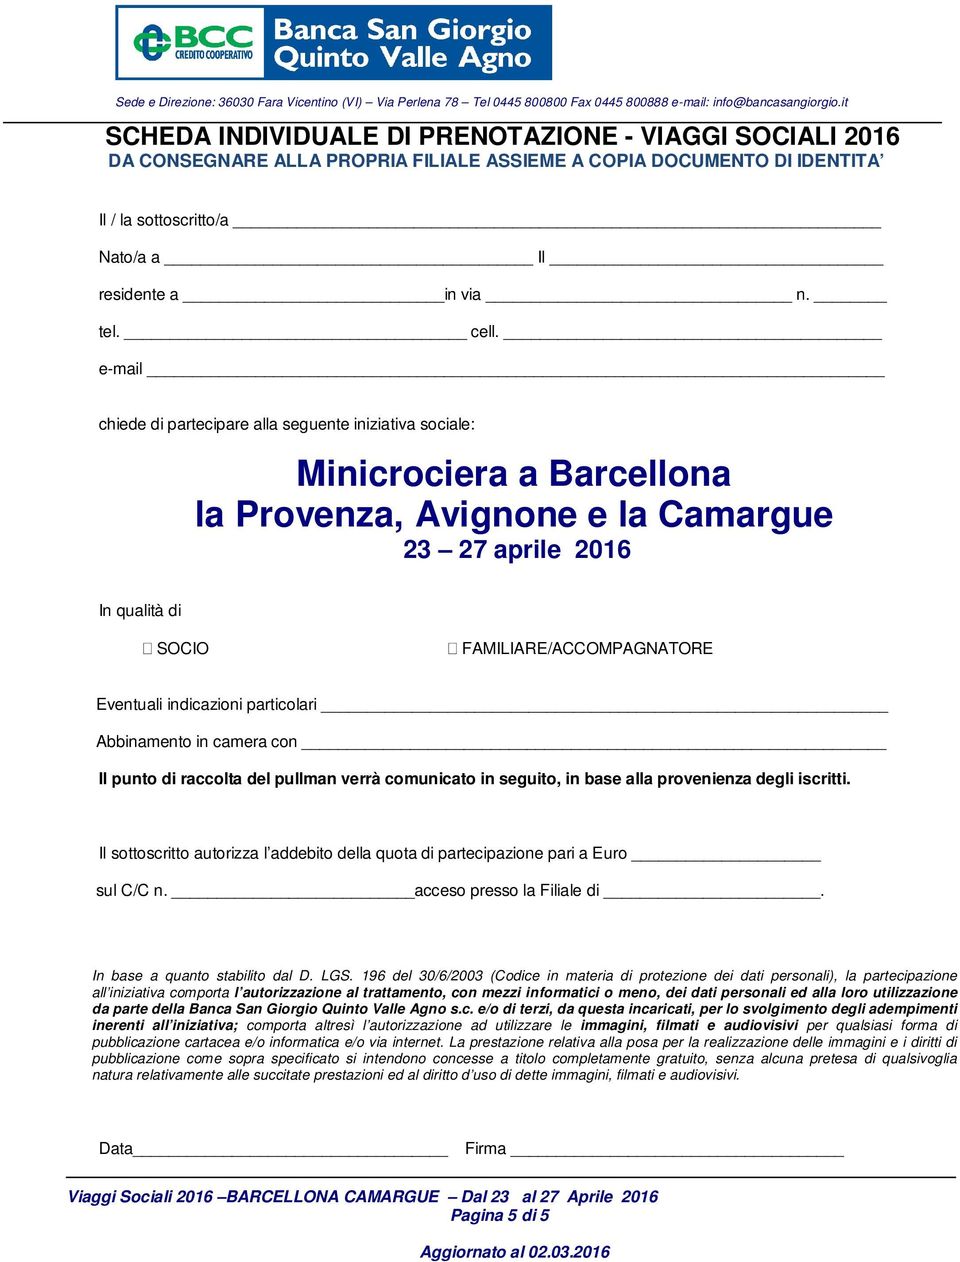 e-mail chiede di partecipare alla seguente iniziativa sociale: Minicrociera a Barcellona la Provenza, Avignone e la Camargue 23 27 aprile 2016 In qualità di SOCIO FAMILIARE/ACCOMPAGNATORE Eventuali